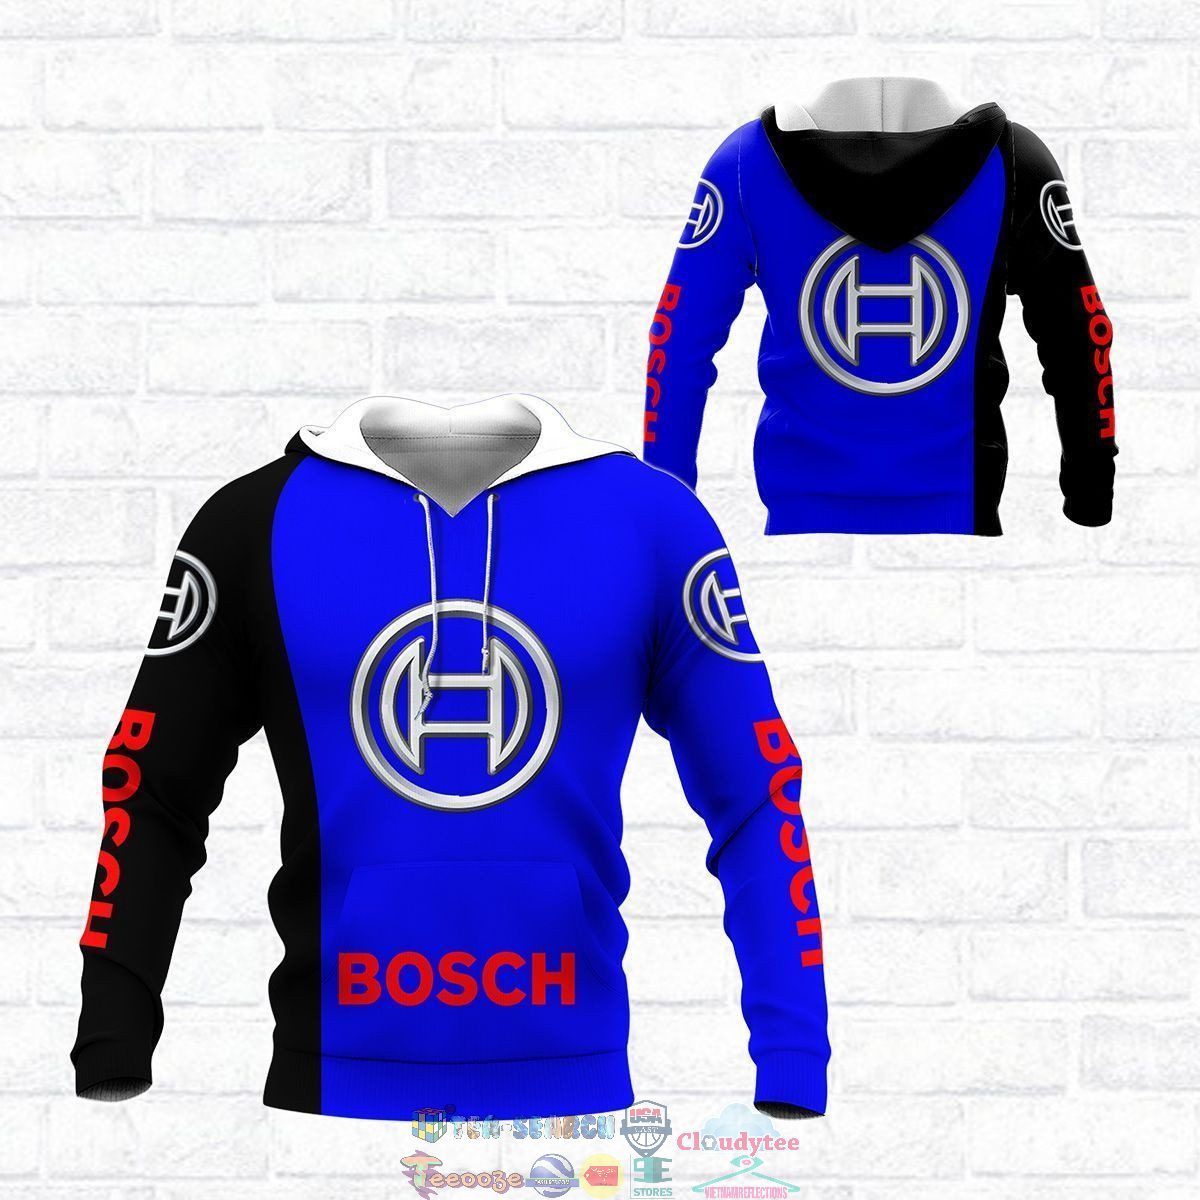 Robert Bosch GmbH ver 6 3D hoodie and t-shirt – Saleoff